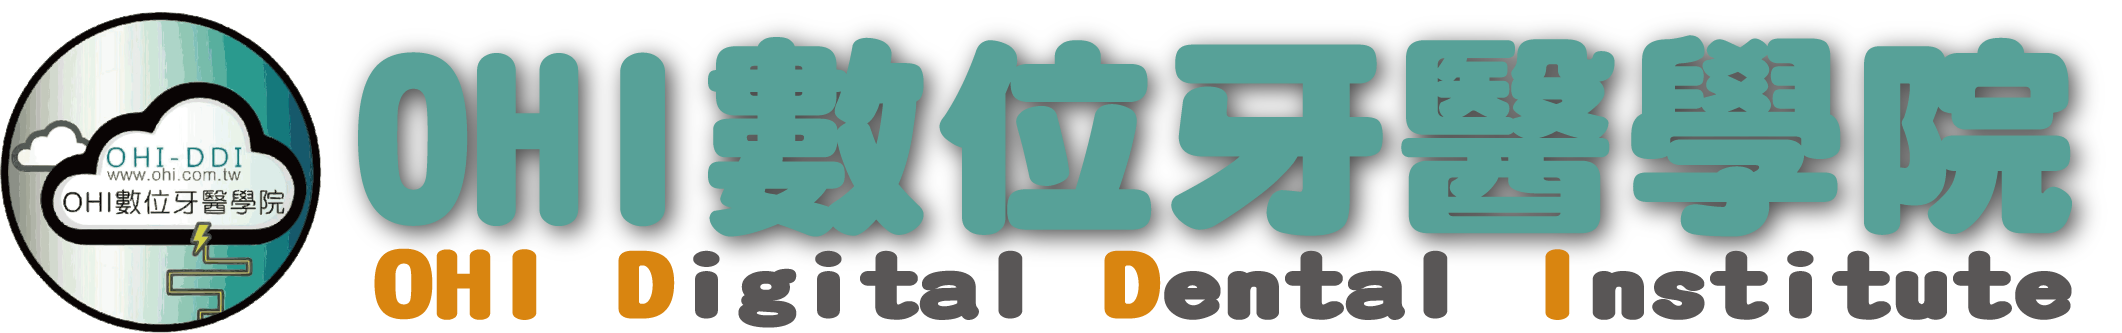 與Tadel台灣牙醫數位學習學會合作開發OHI數位牙醫學院